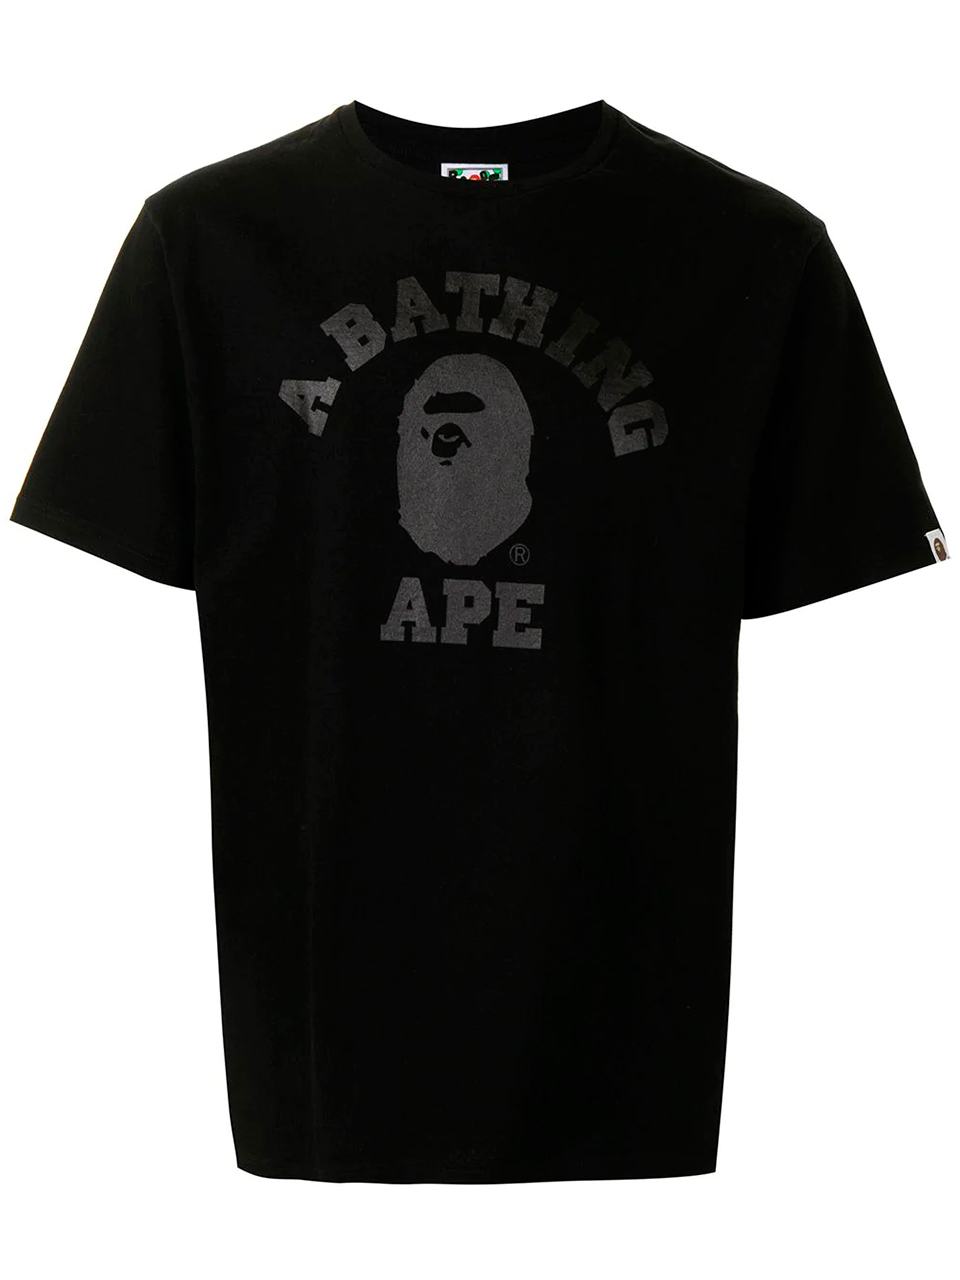 Imagem de: Camiseta BAPE Preta com Logo